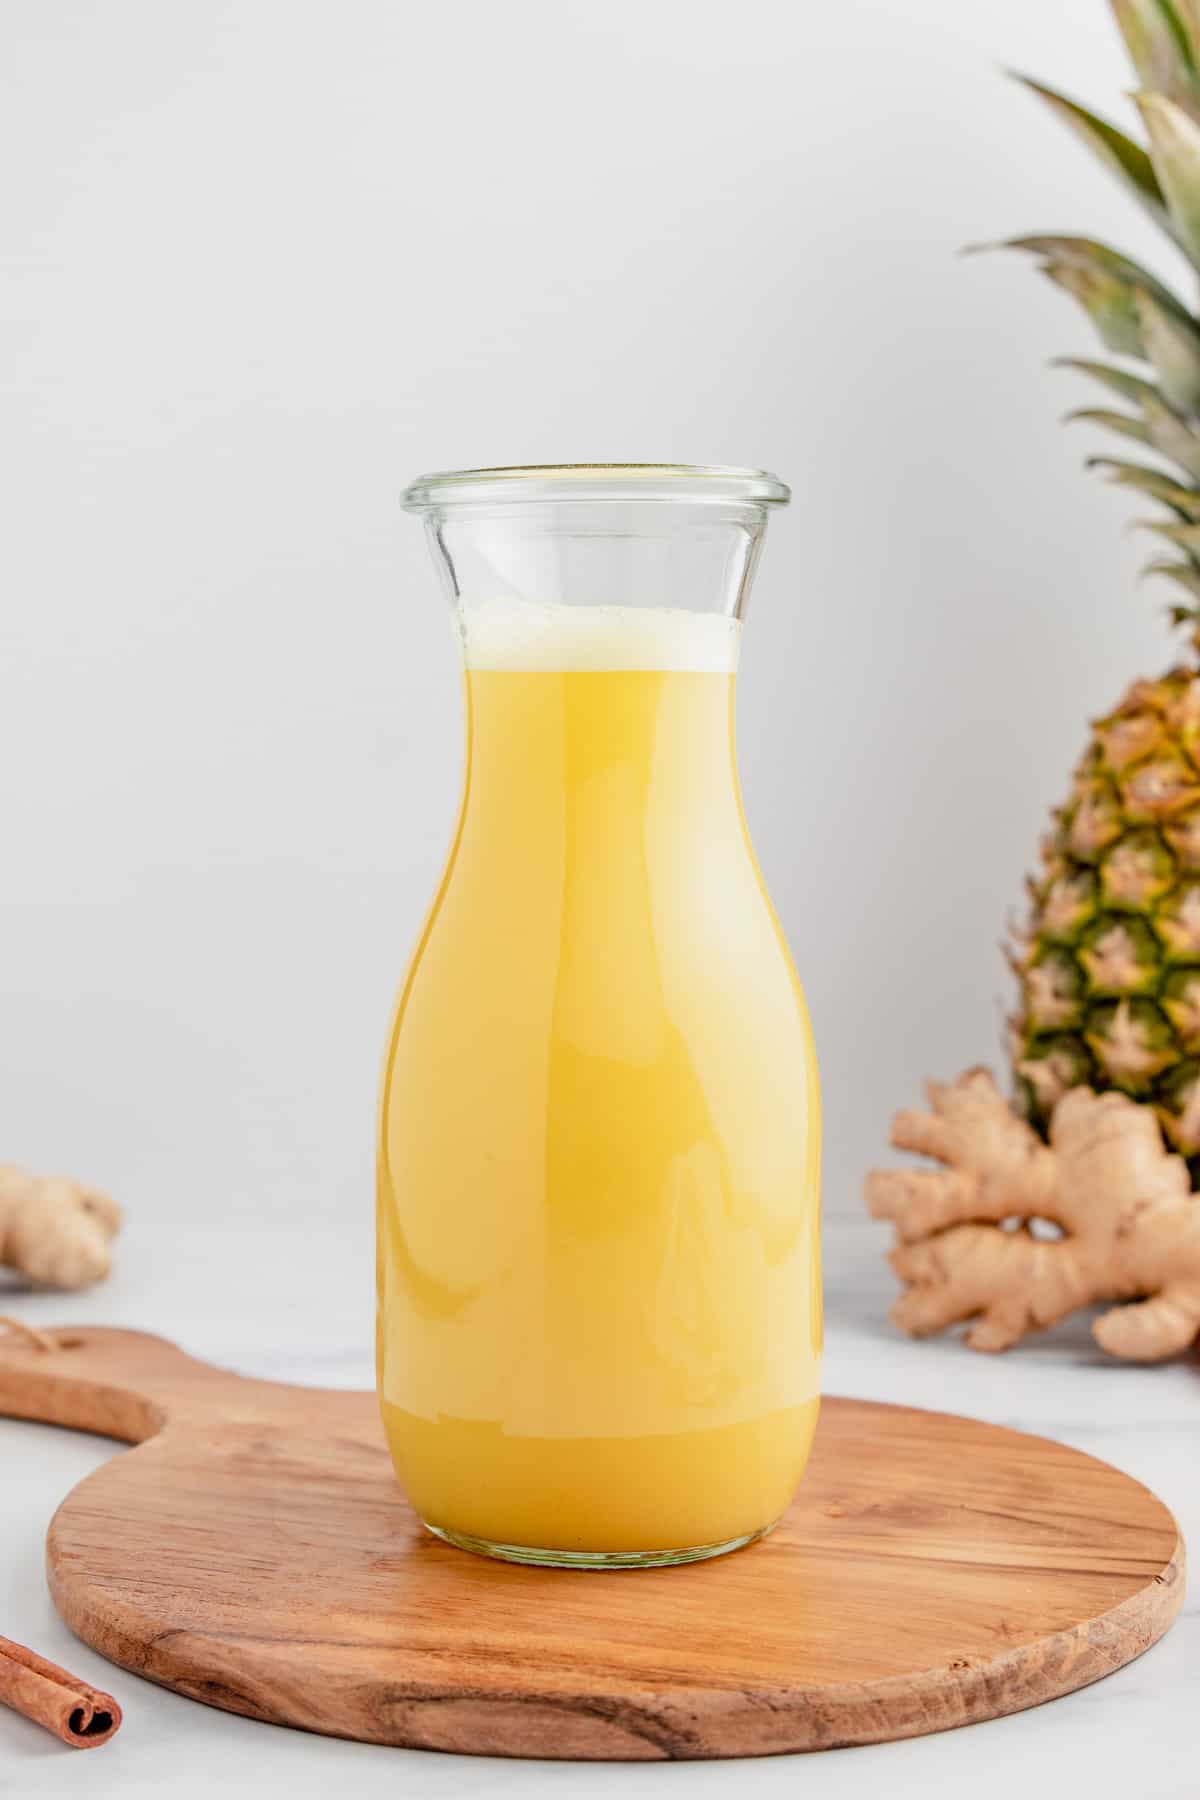 A glass bottle full of pineapple ginger juice.